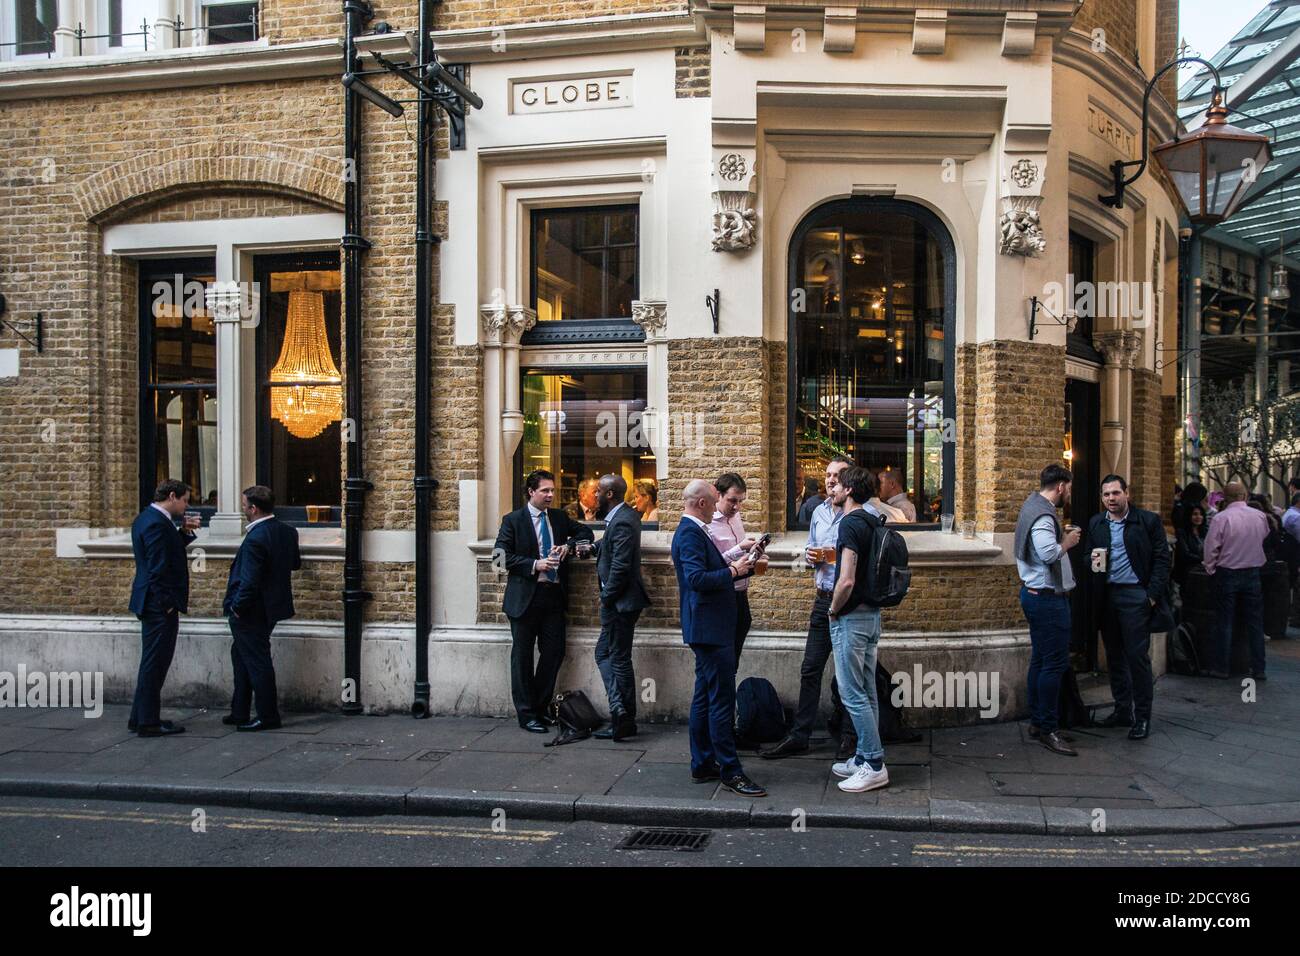 Gran Bretaña / Inglaterra / Londres / gente bebiendo fuera de la taberna Globe en el mercado Borough de Londres . Foto de stock